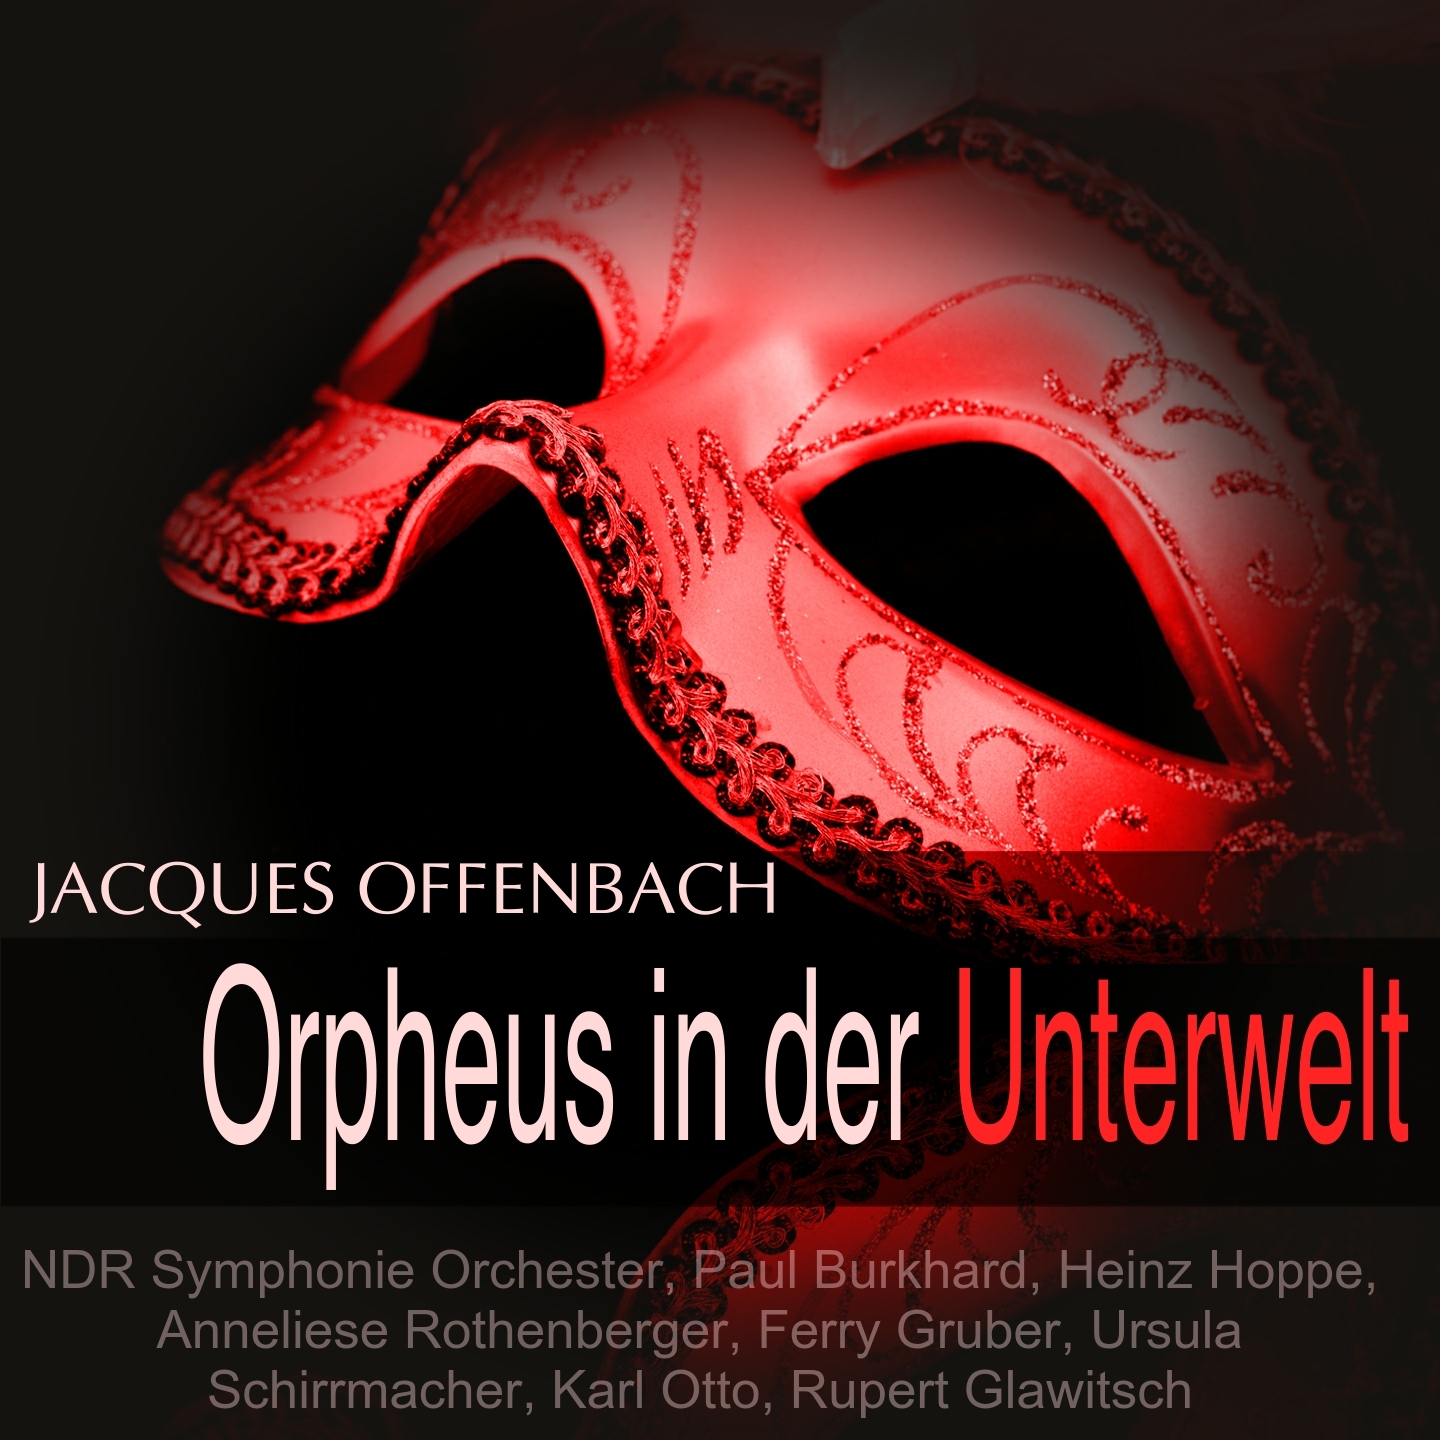 Orpheus in der Unterwelt: "Ein Weib, das Lieb' und Sehnsucht plagen" (Eurydike)